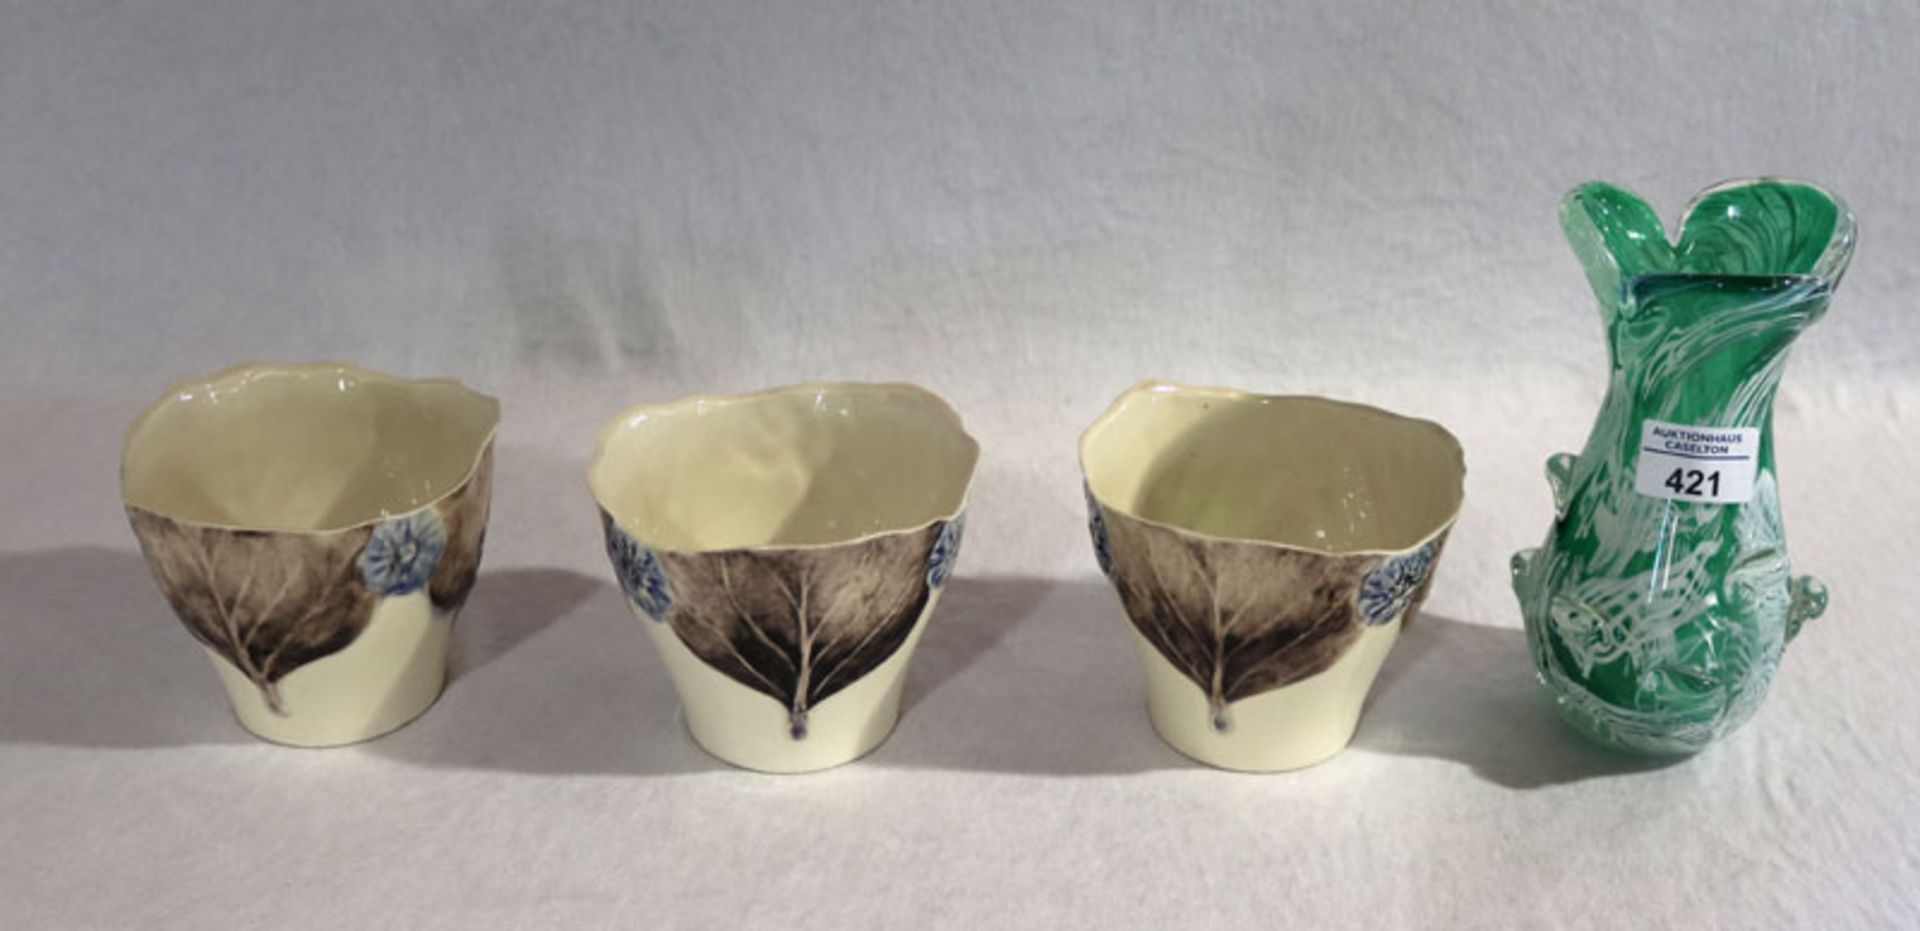 3 Jugendstil Keramik Schalen mit Blattdekor, H 10 cm, D 12 cm, und ausgefallene weiß/grüne Glasvase,